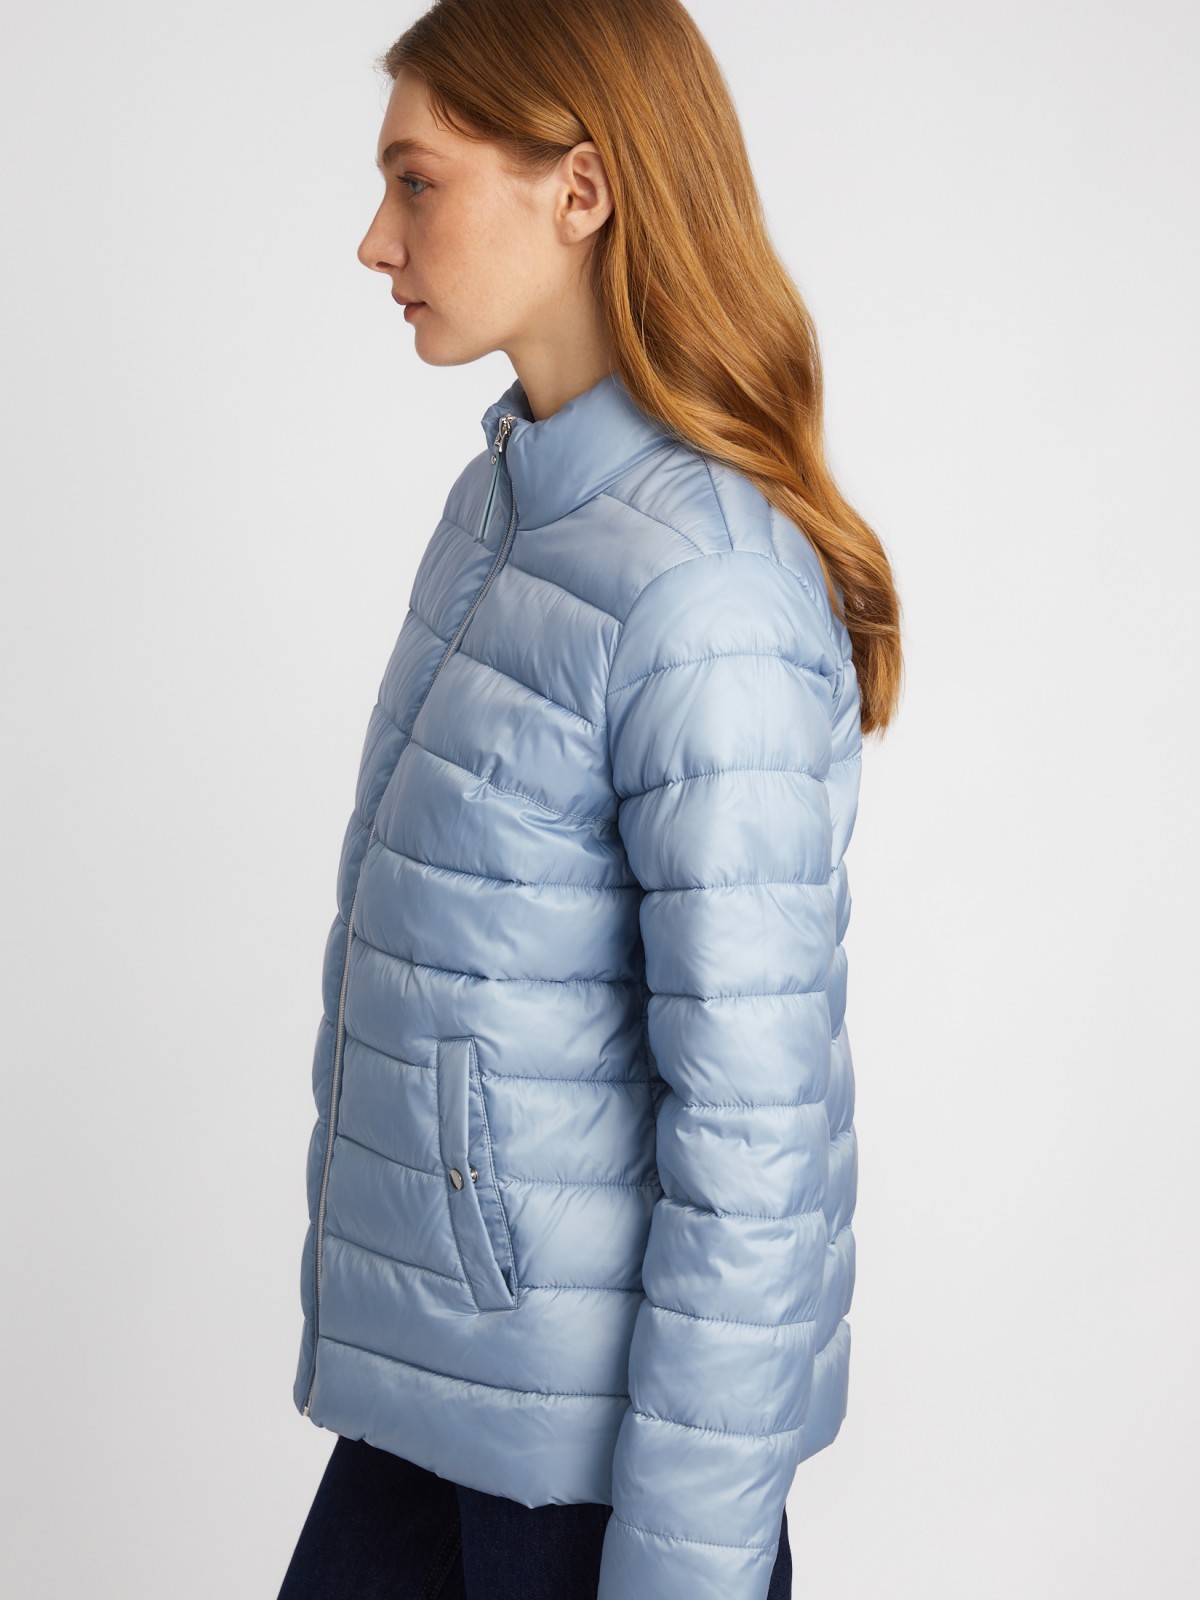 Утеплённая короткая куртка на молнии с воротником zolla 024135112154, цвет голубой, размер S - фото 4